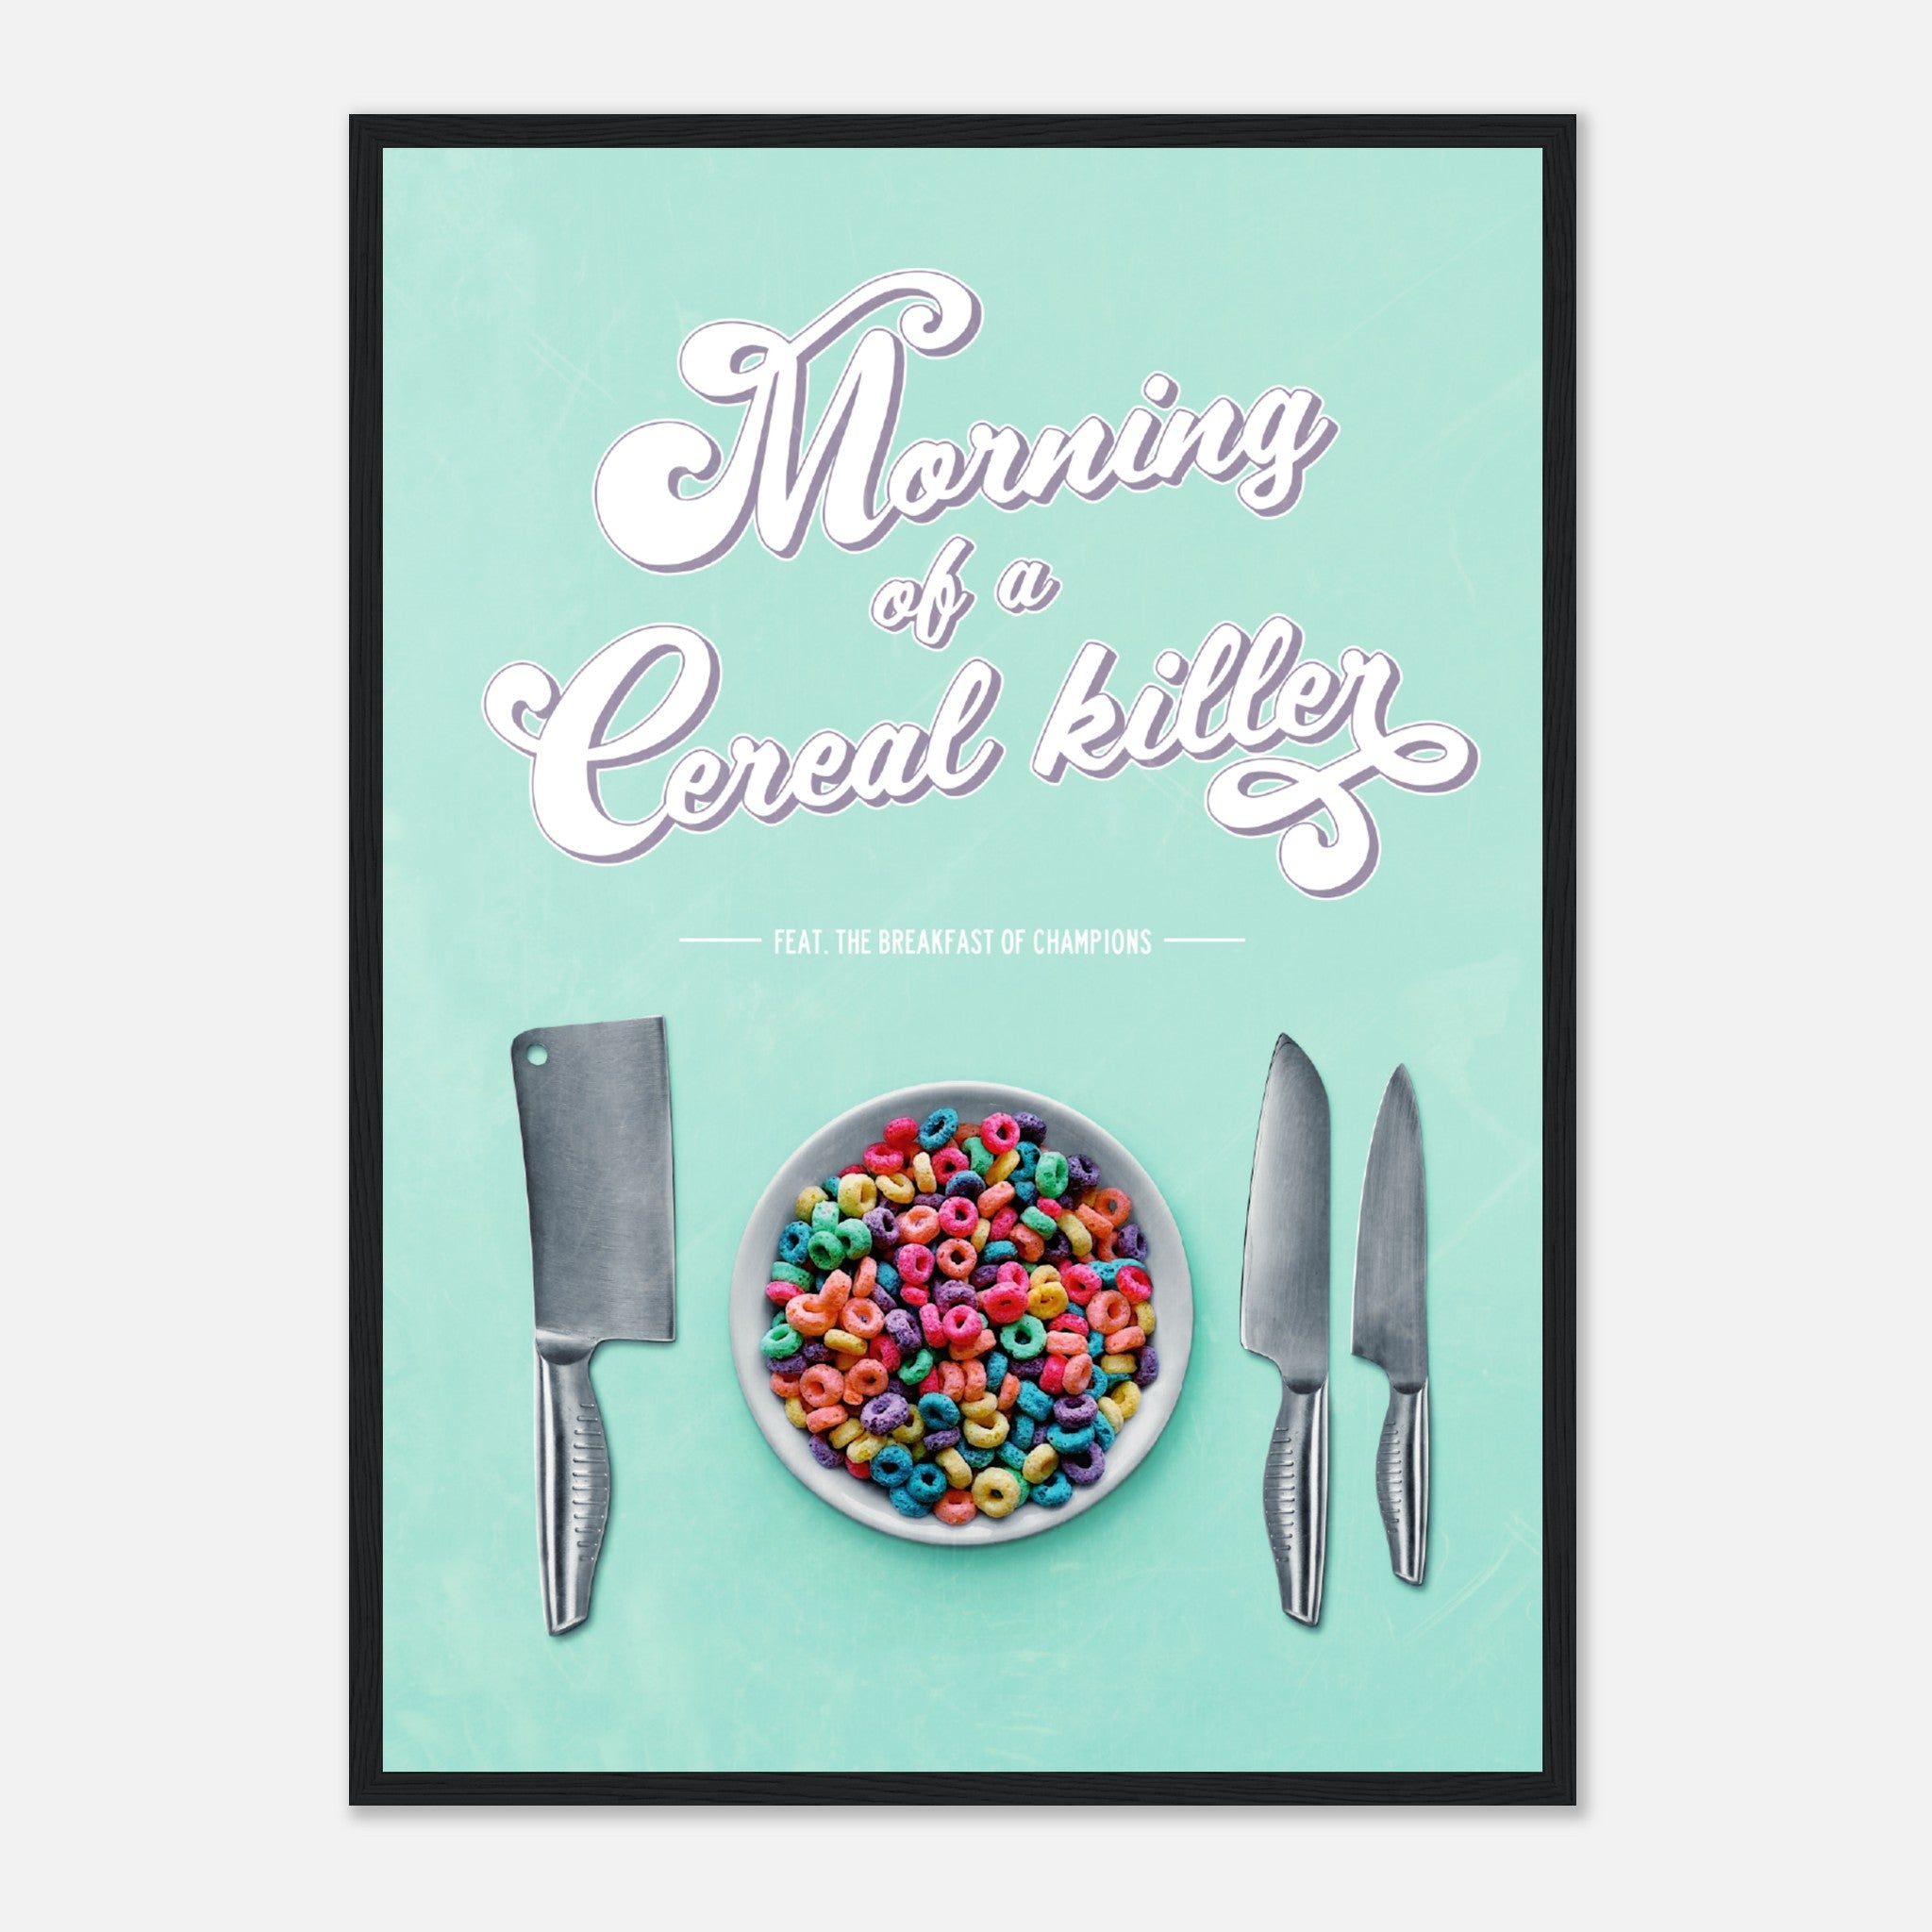 Cereal Killer Poster